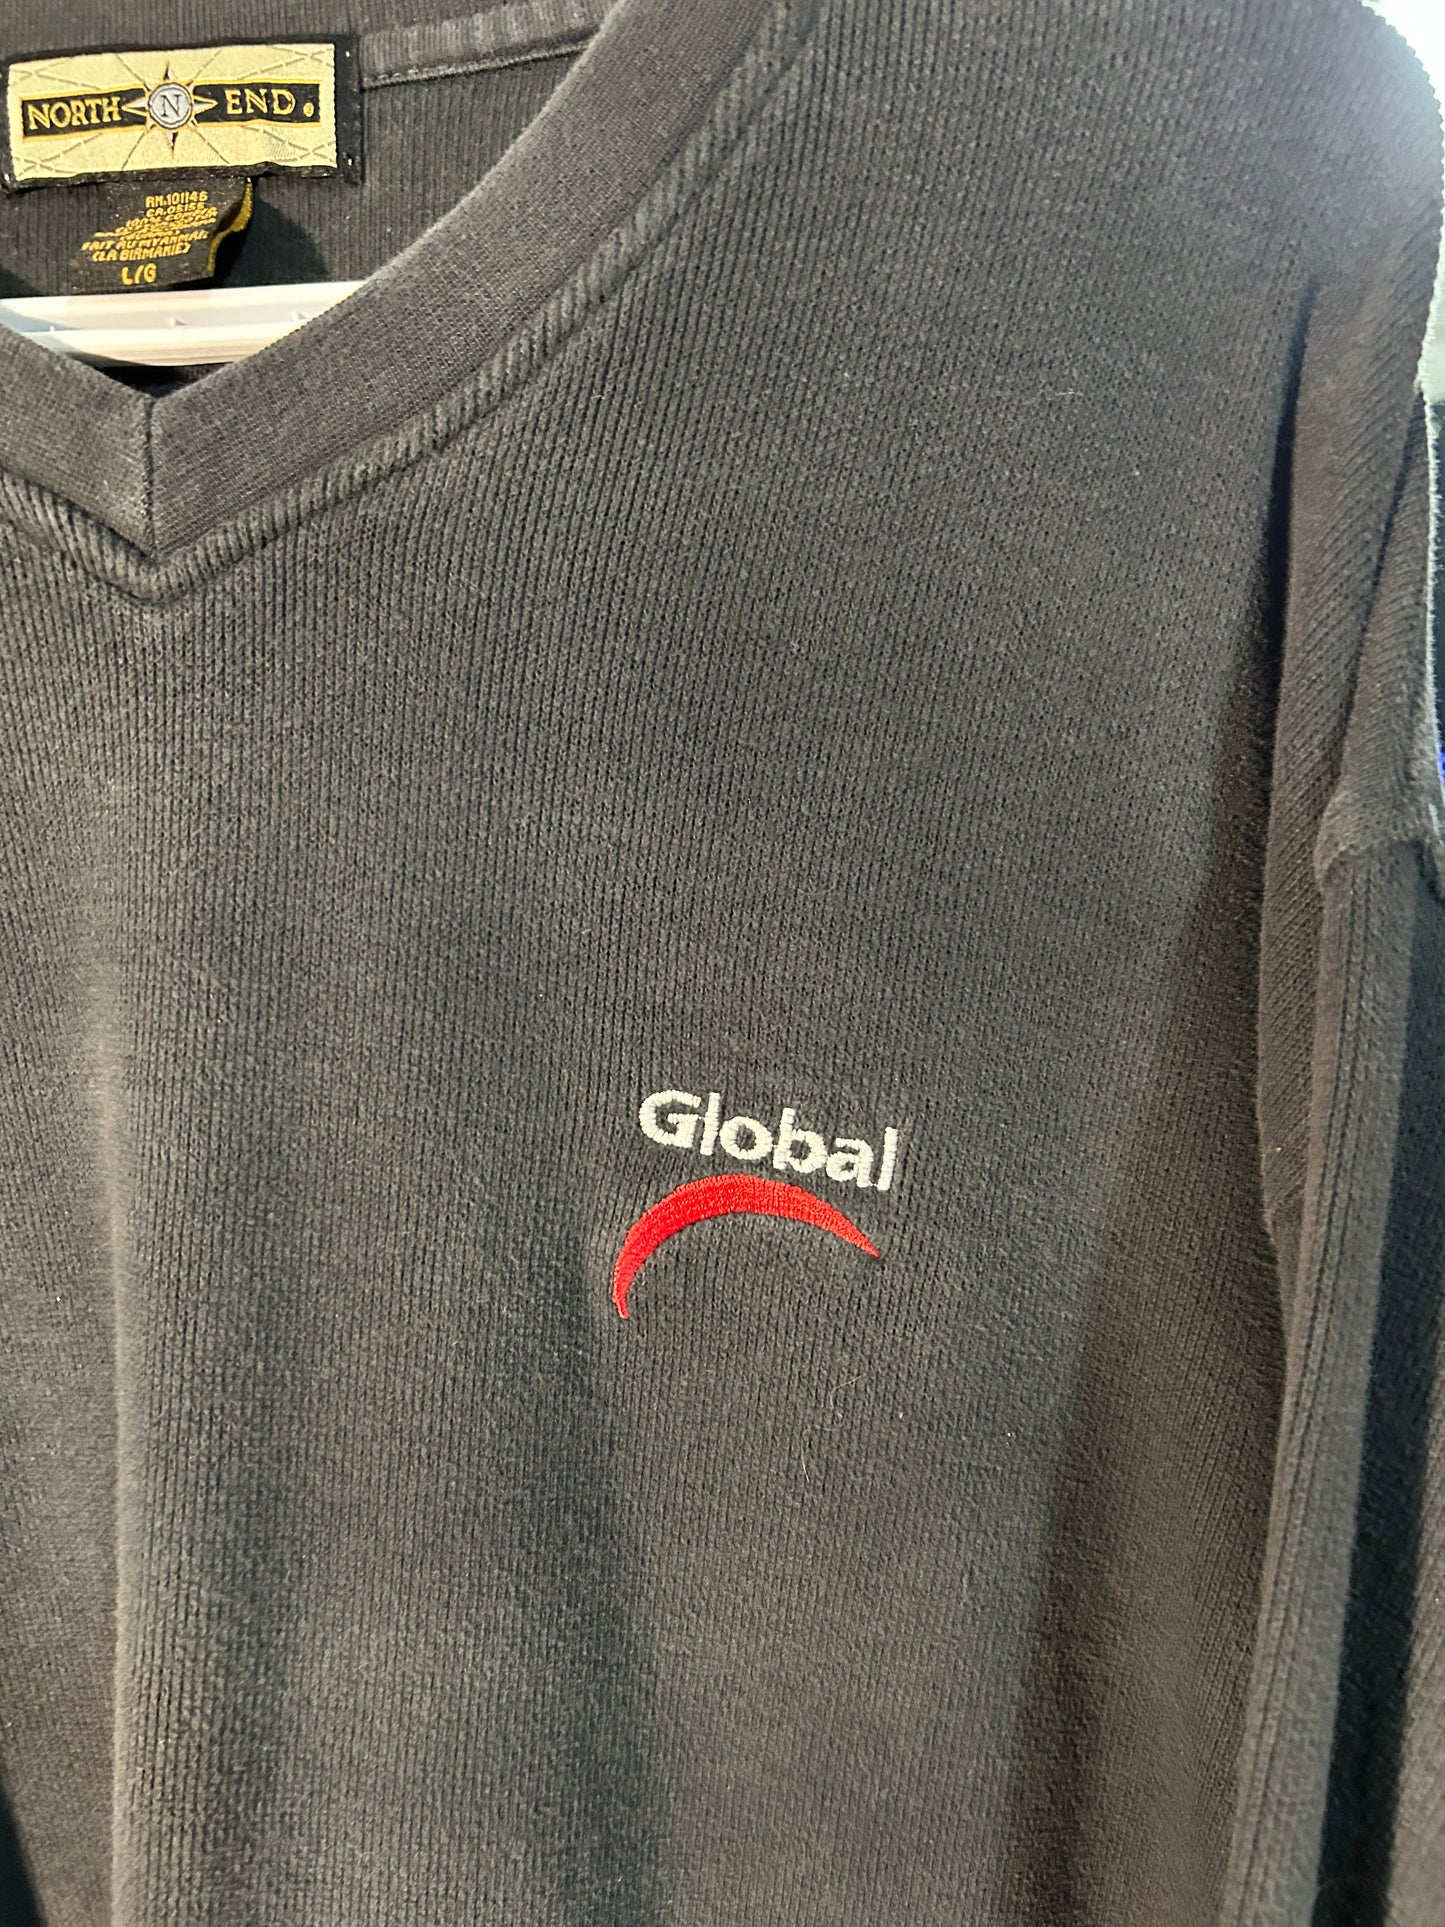 Global V-neck Sweater (L)